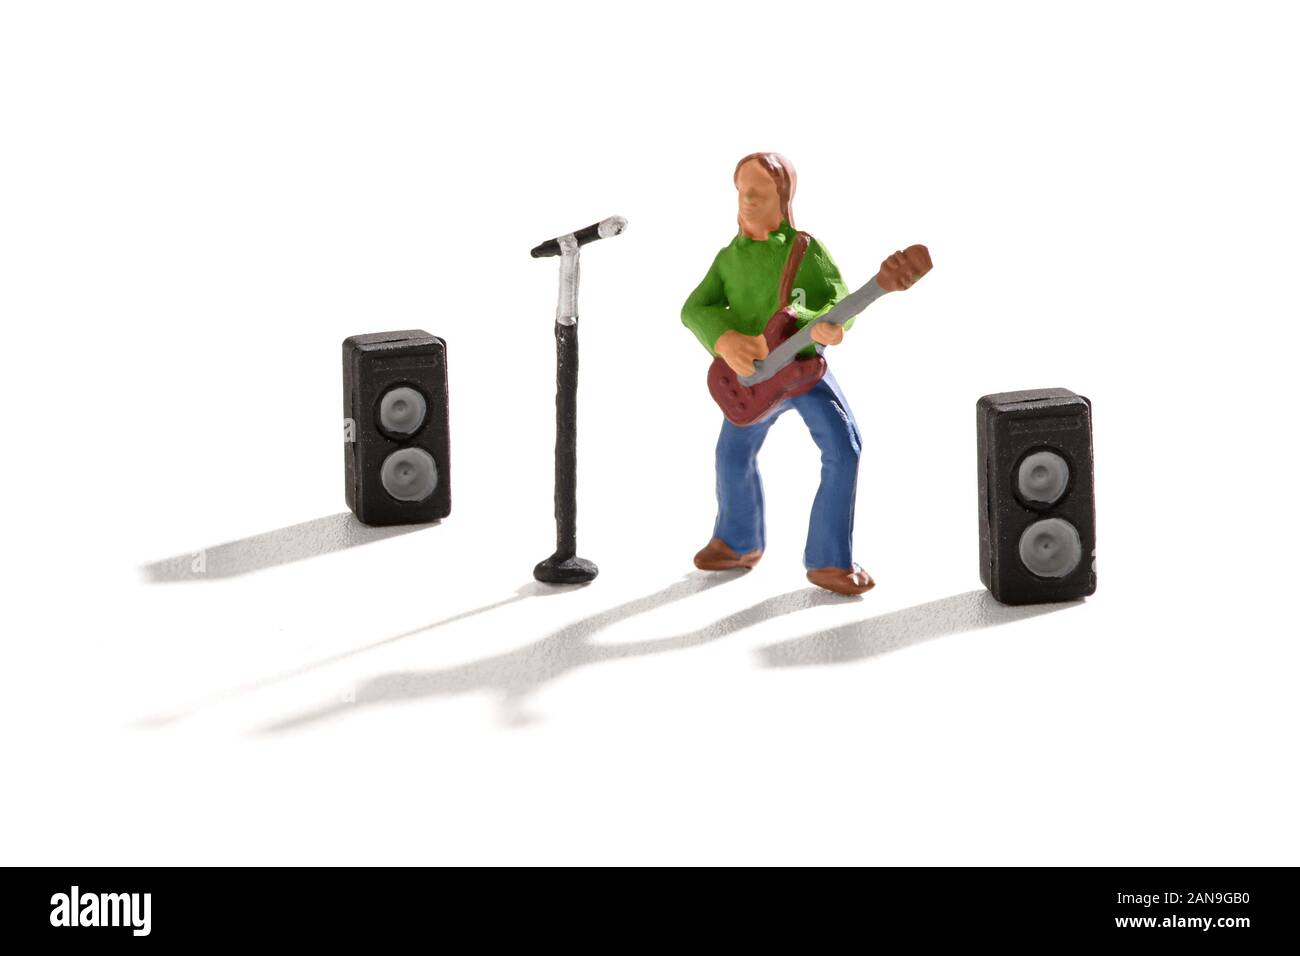 Miniatur Abbildung eines Rockstars Spielen einer Gitarre und Gesang vor ein Mikrofon und Lautsprecher in einem Unterhaltungs- und Rock n Roll Musik Konzept Stockfoto